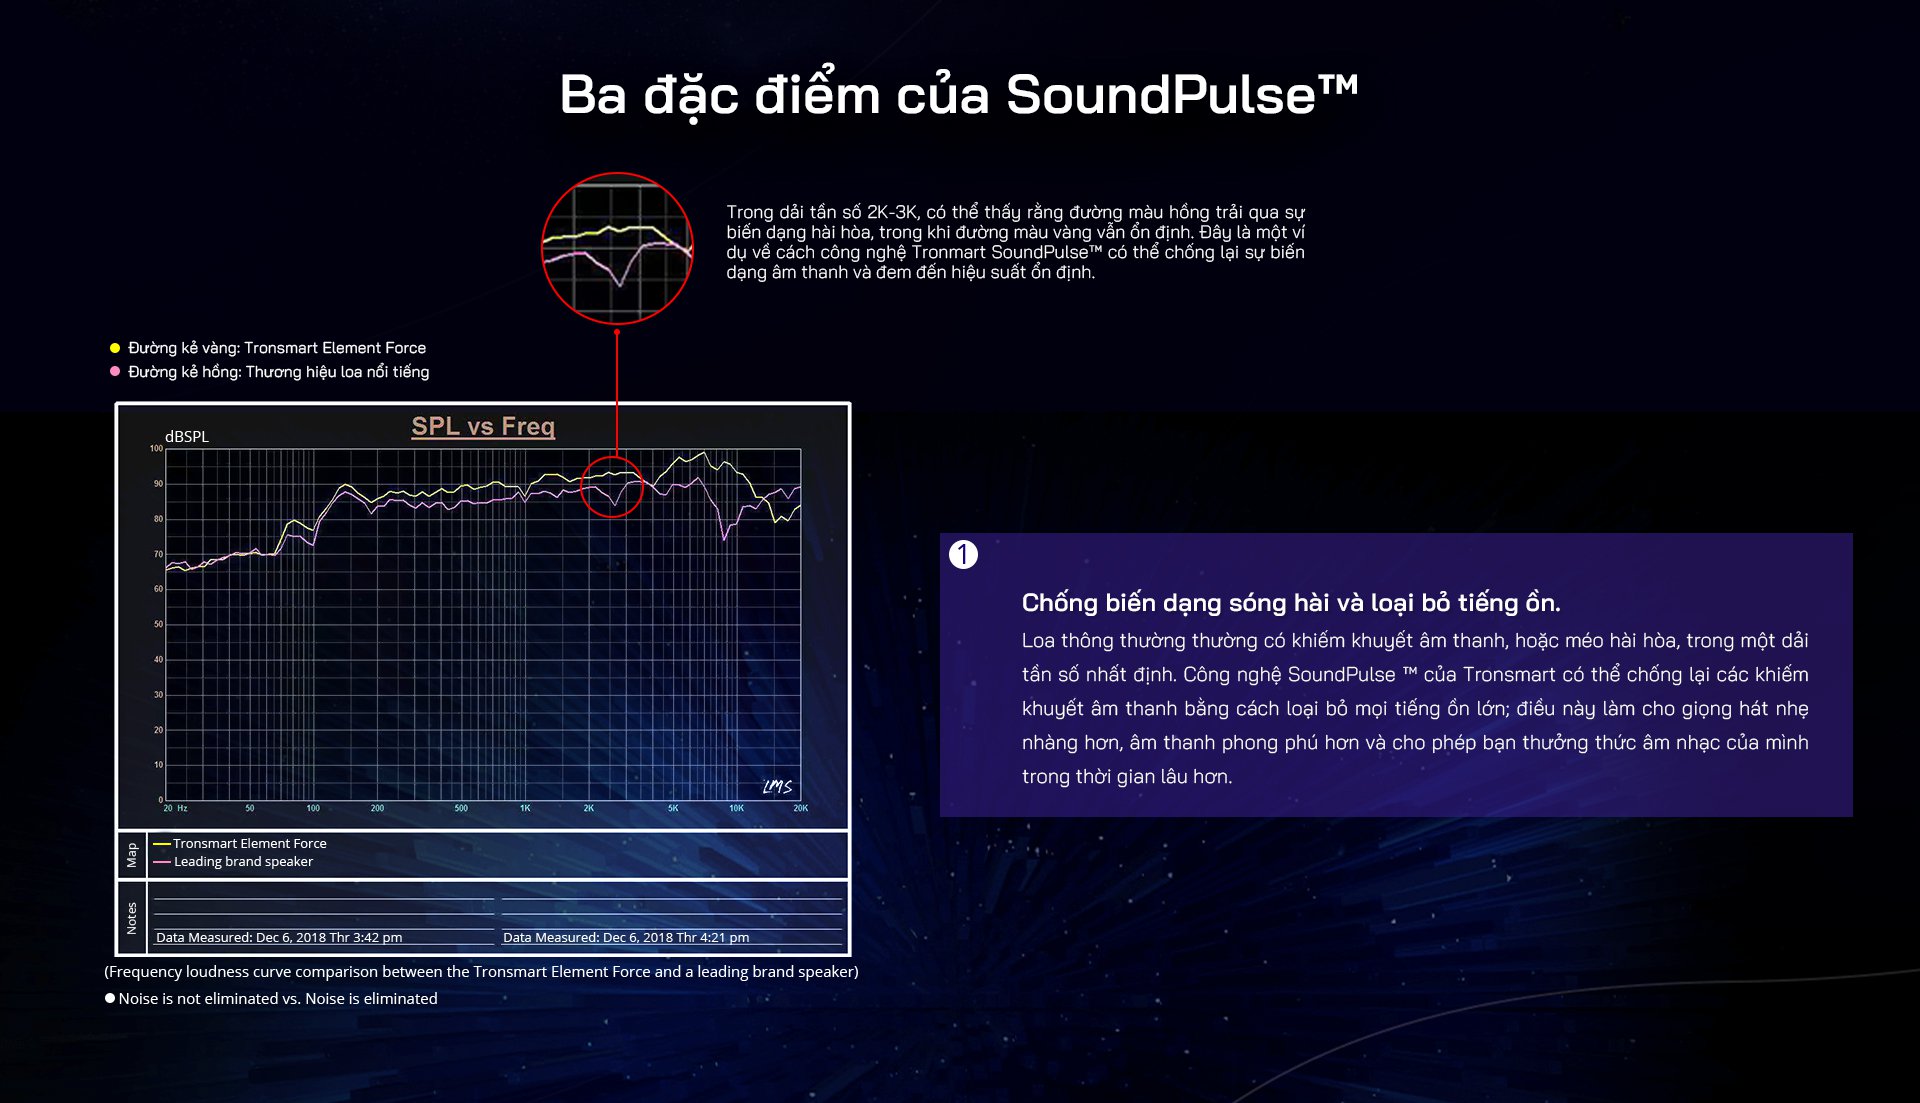 Tronsmart SoundPulse™ - Công nghệ âm thanh độc quyền của Tronsmart